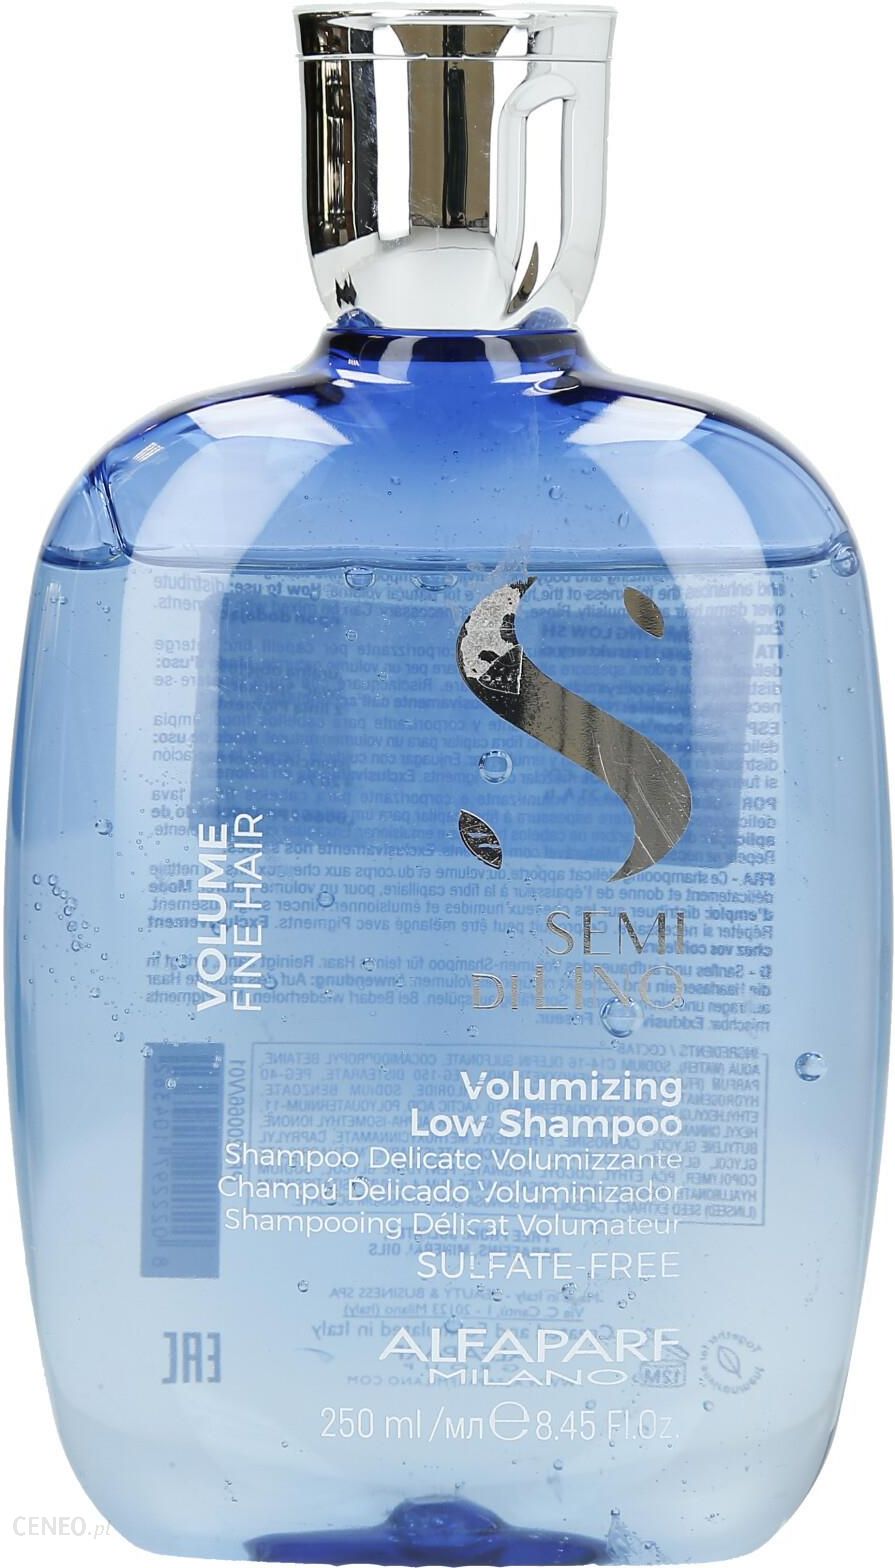 alfaparf semi di lino volume szampon do włosów skład